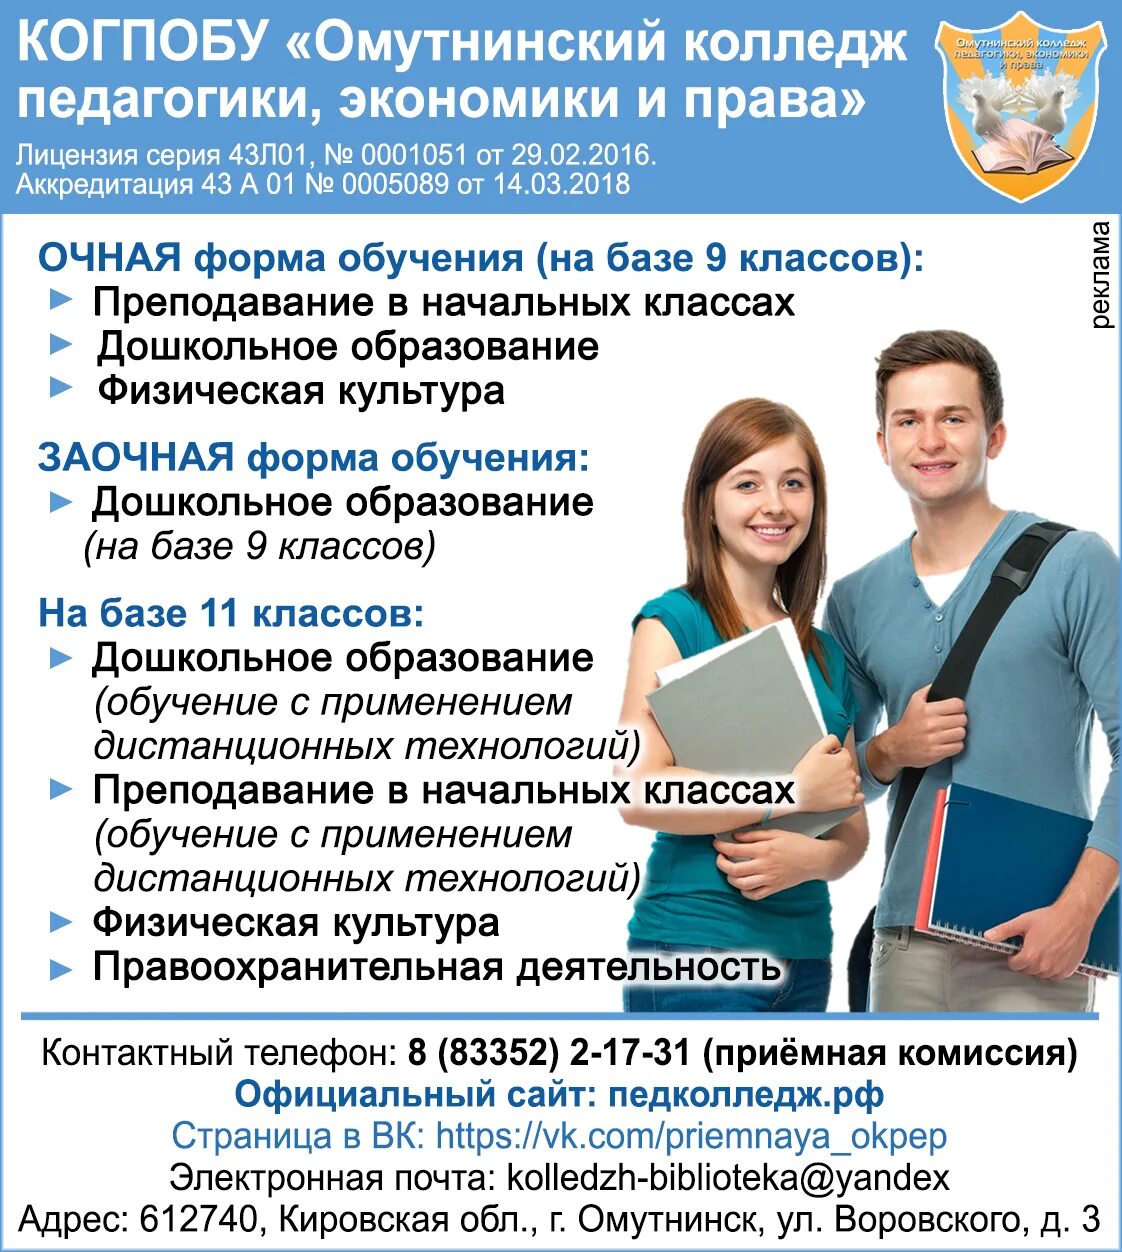 Педколледж заочно. Педагогический колледж Омутнинск.